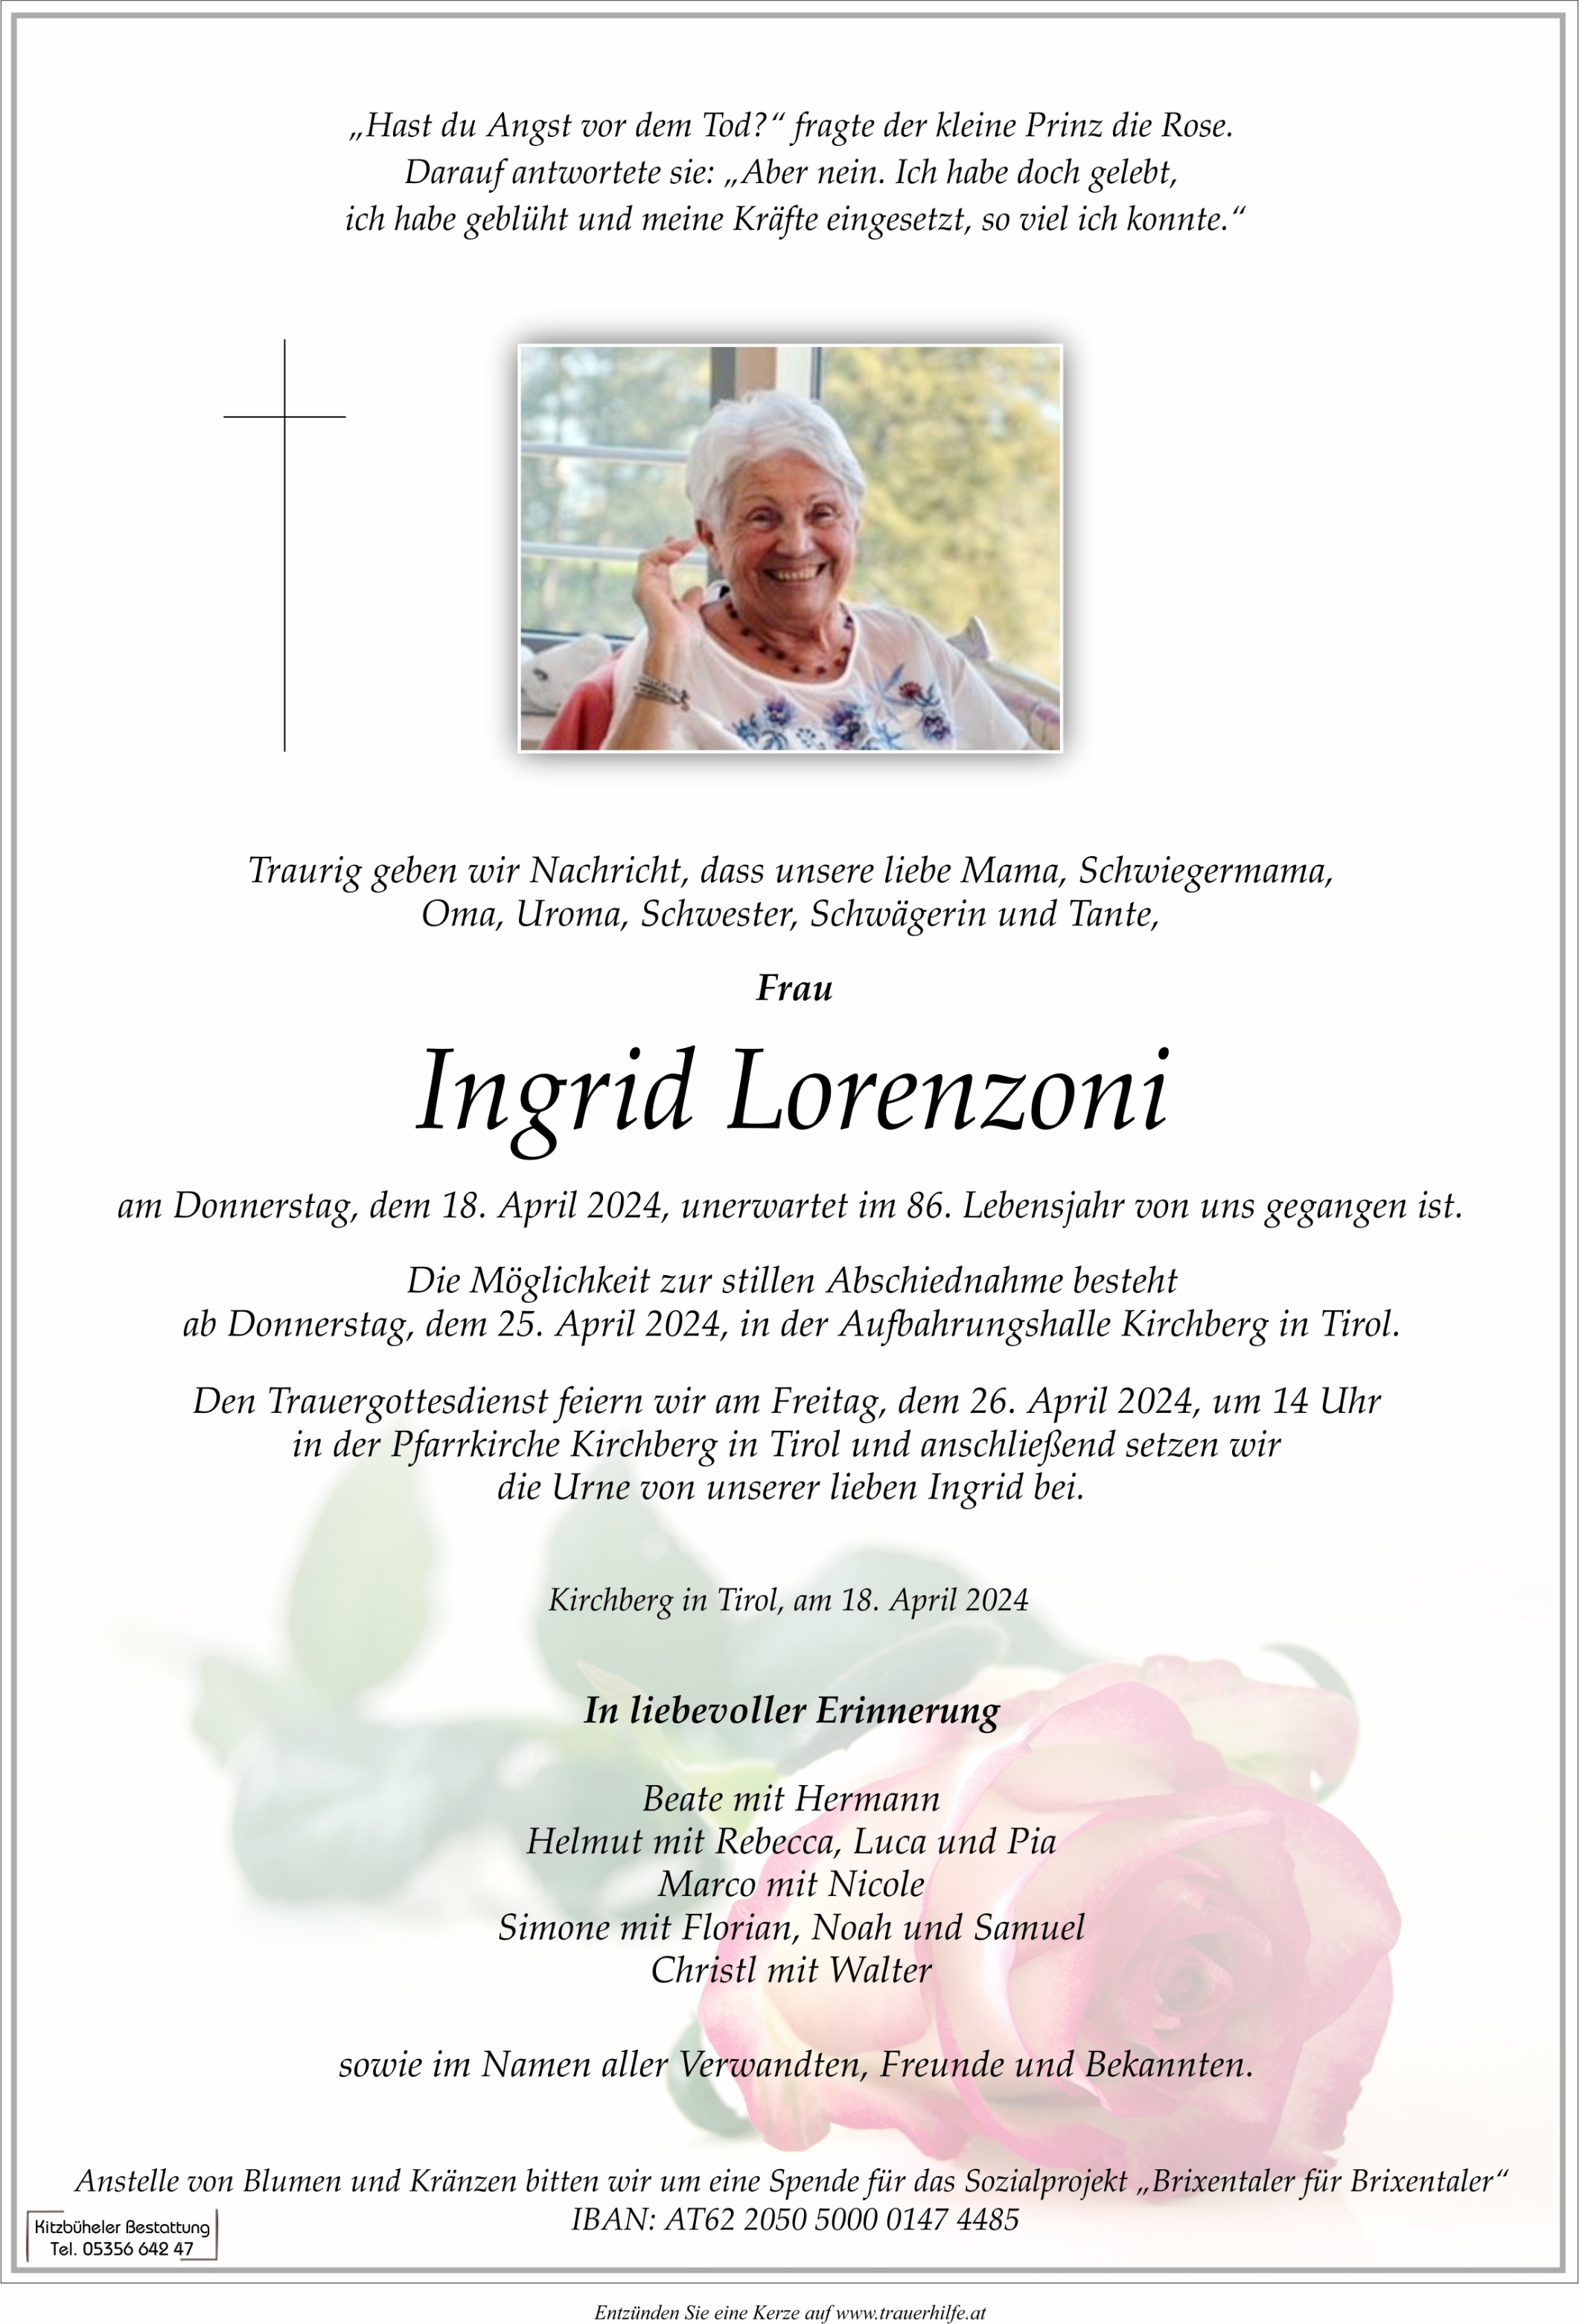 Ingrid Lorenzoni